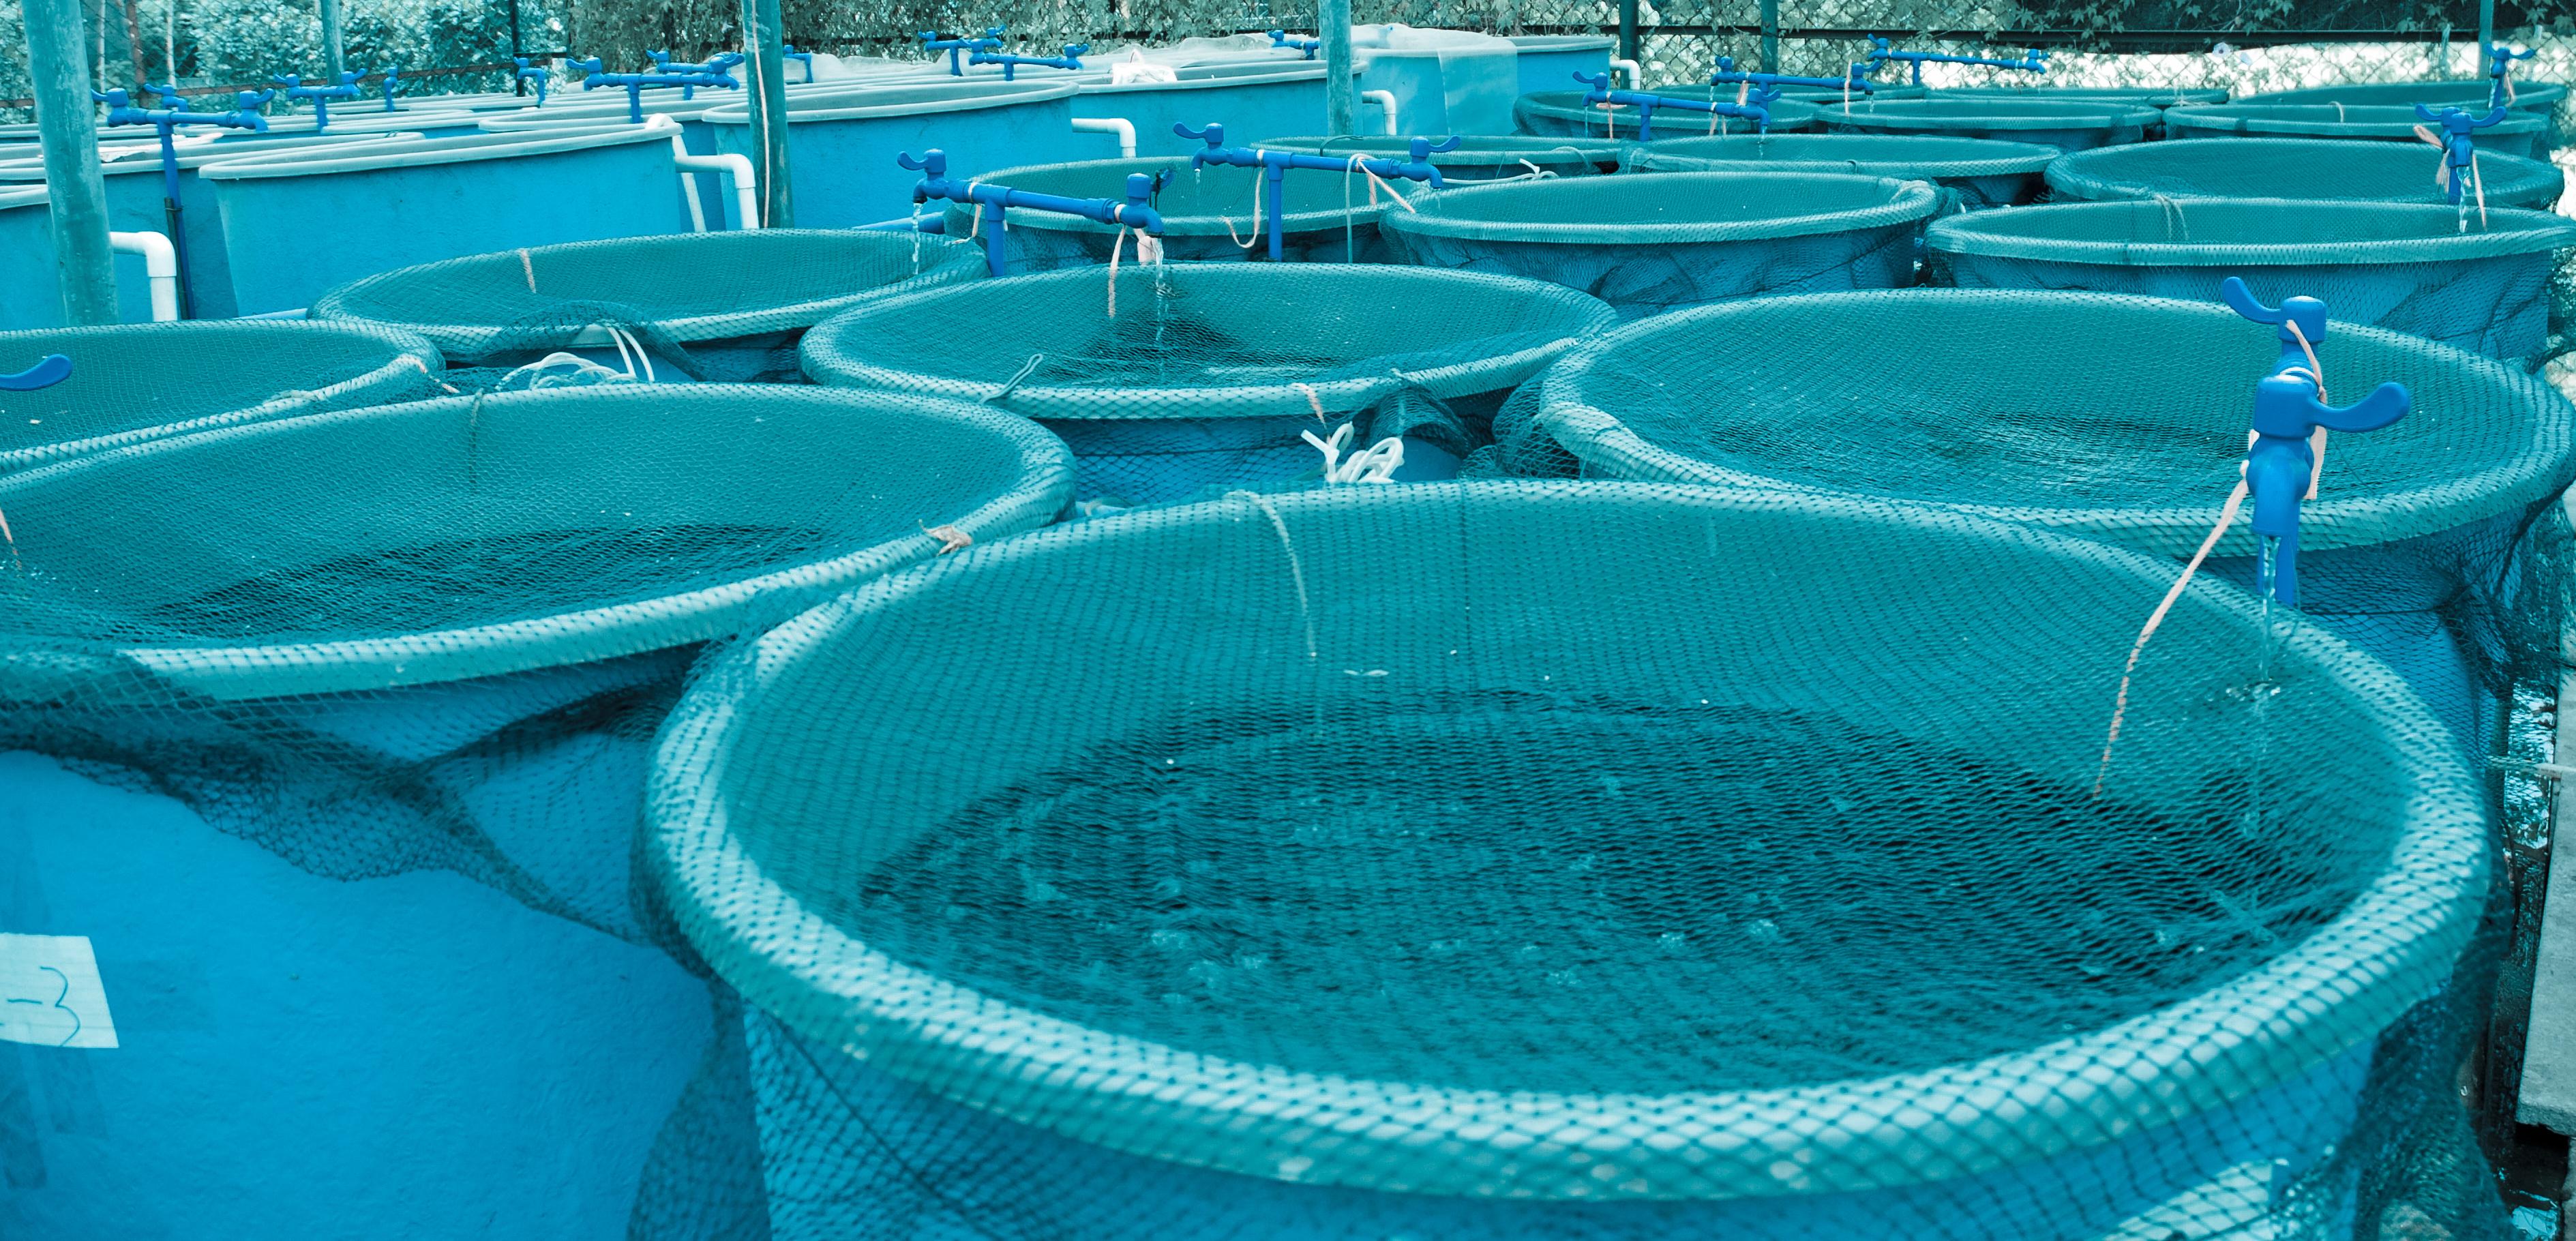 Aquaculture facility